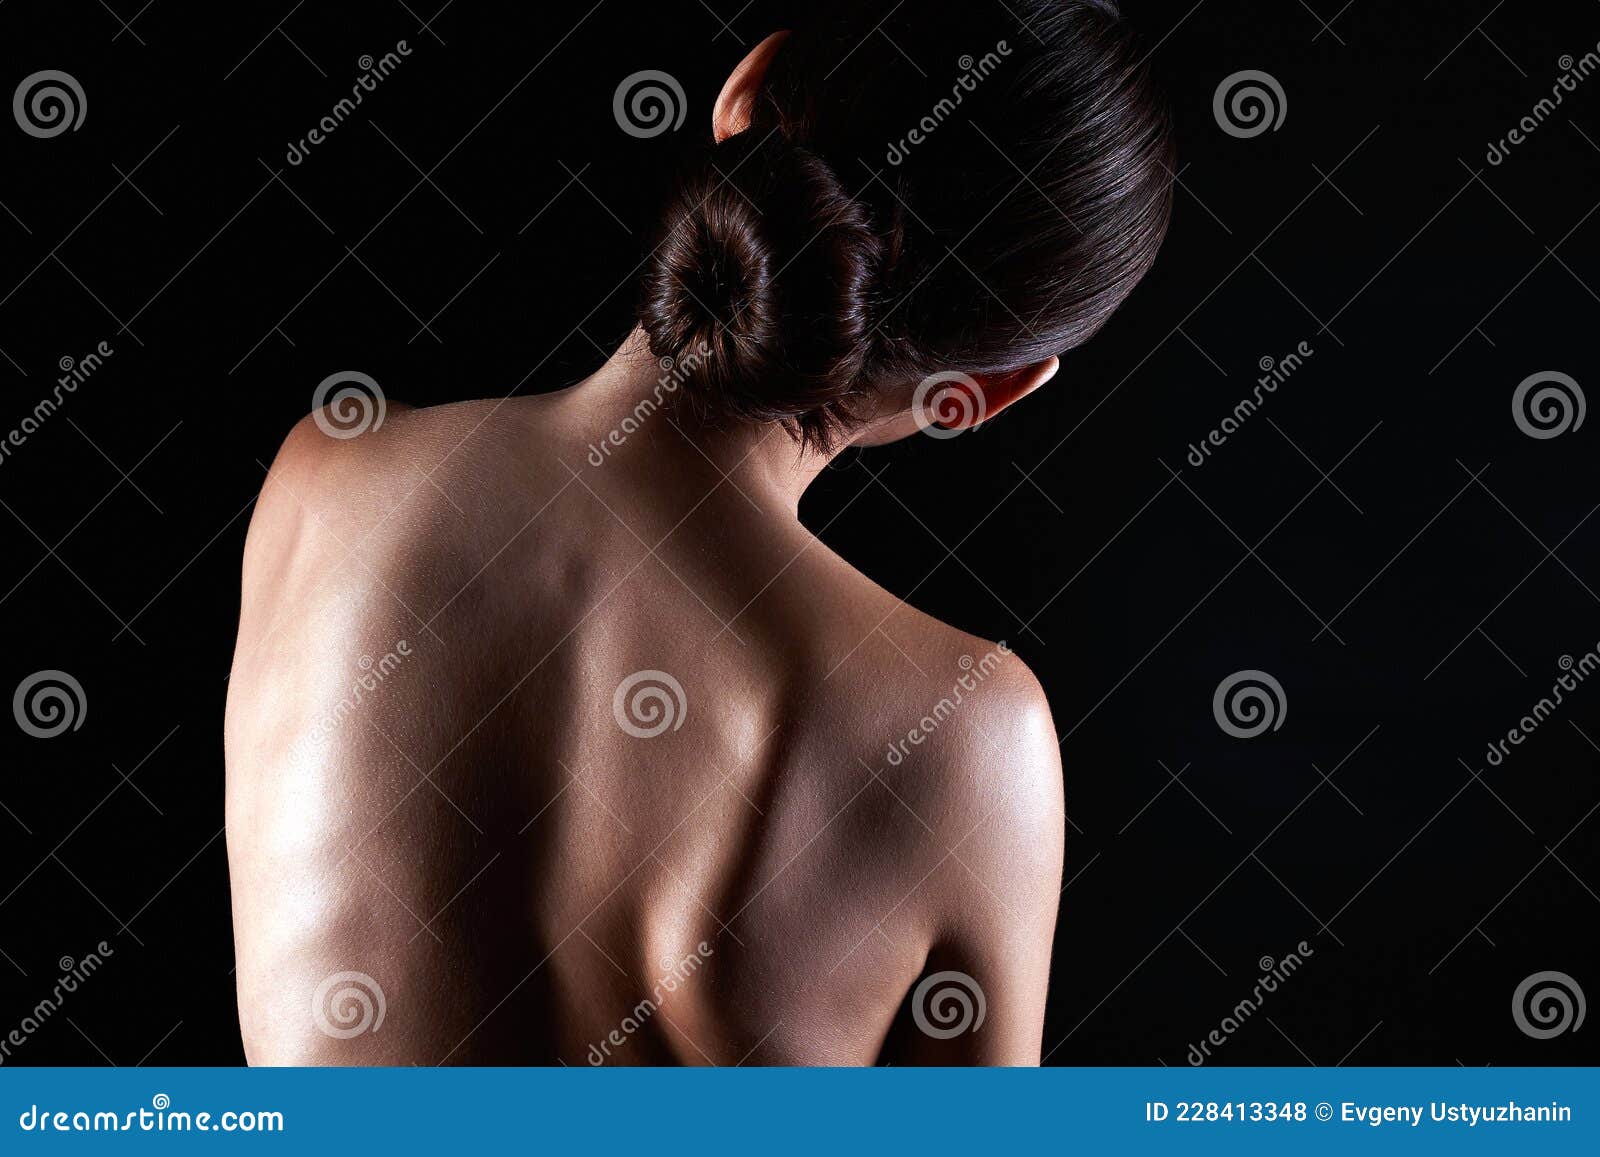 Голых девушек со спины (56 фото) - секс и порно lys-cosmetics.ru